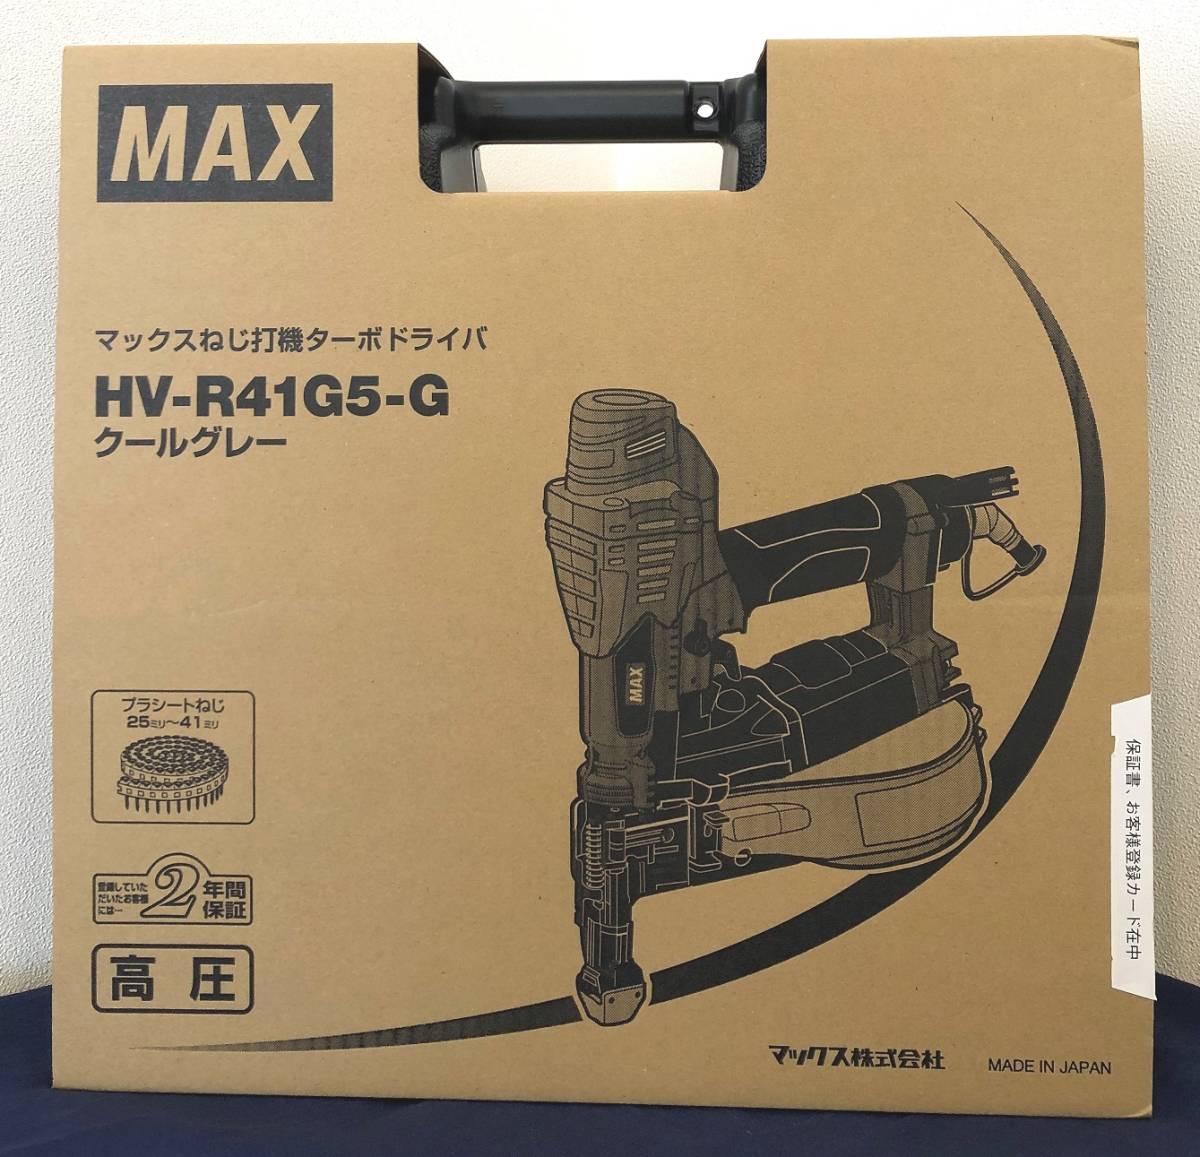 【未使用品】 MAX マックス HV-R41G5-G 高圧ねじ打ち機ターボドライバ